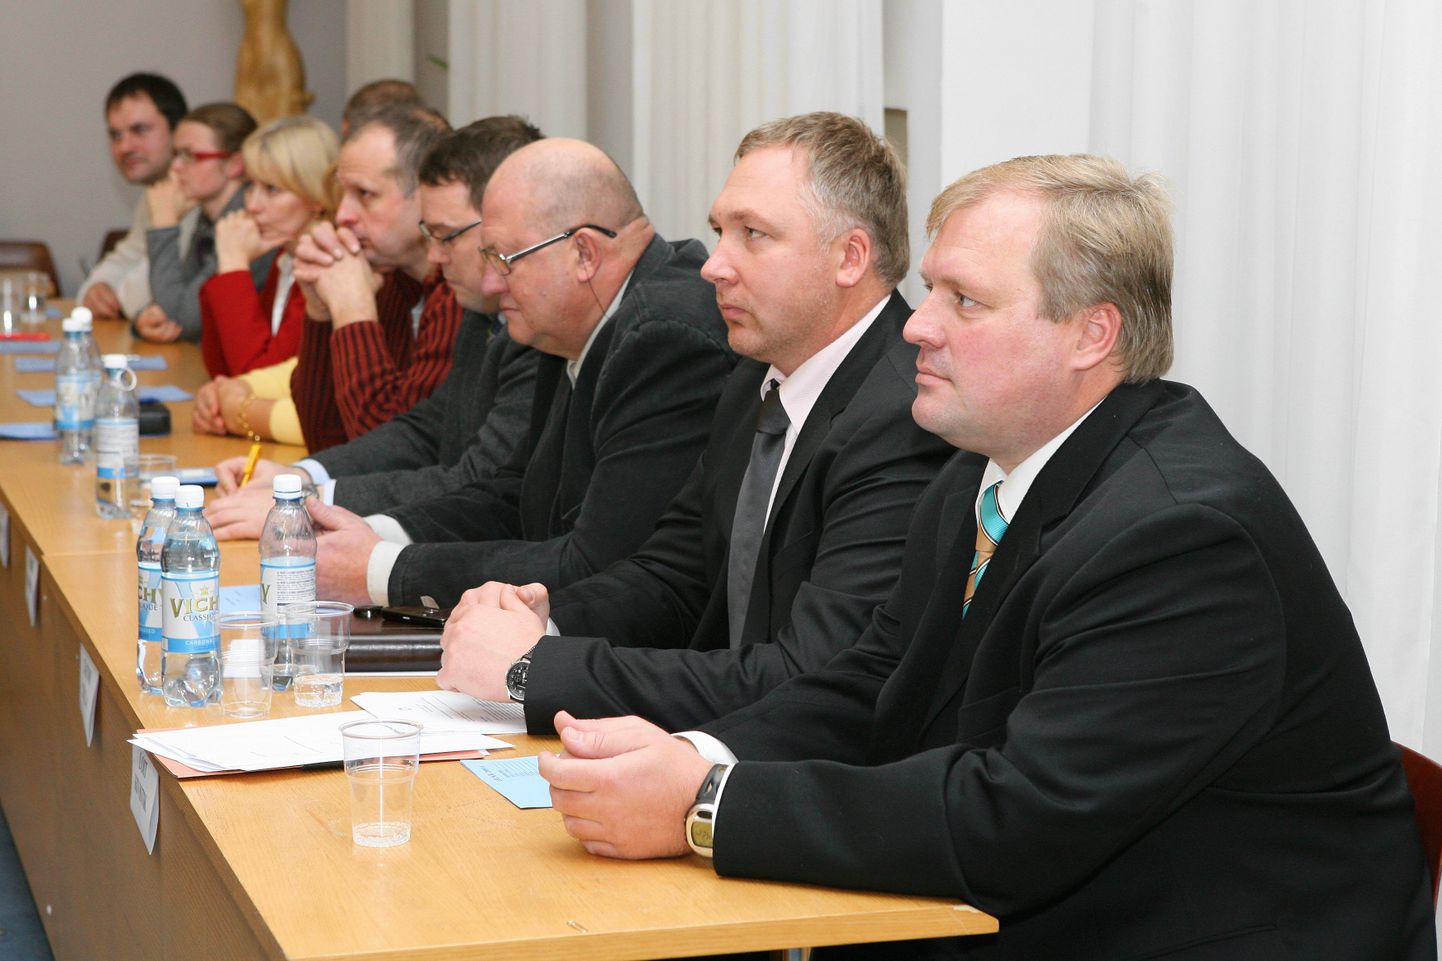 Volikogu kinnitas eelarve. Fotol Viljandi volikogu suurima fraktsiooni, Reformierakonna liikmed.